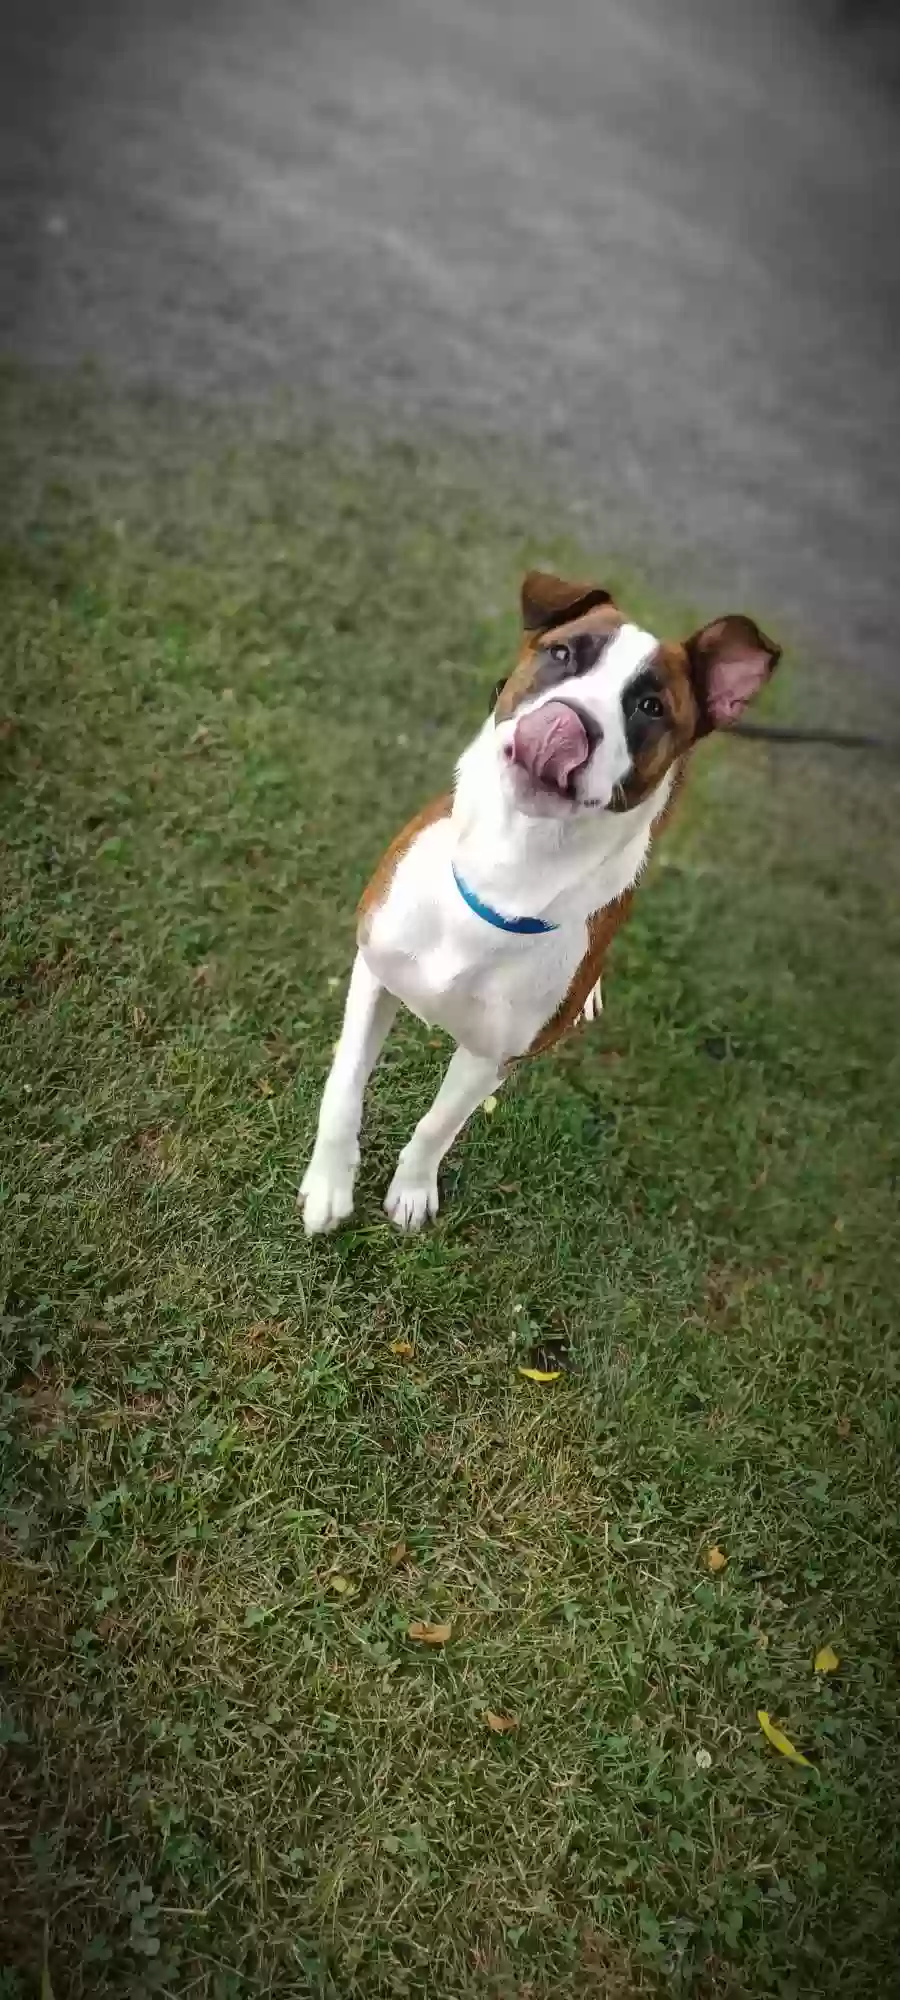 adoptable Dog in Nickelsville,VA named Duke